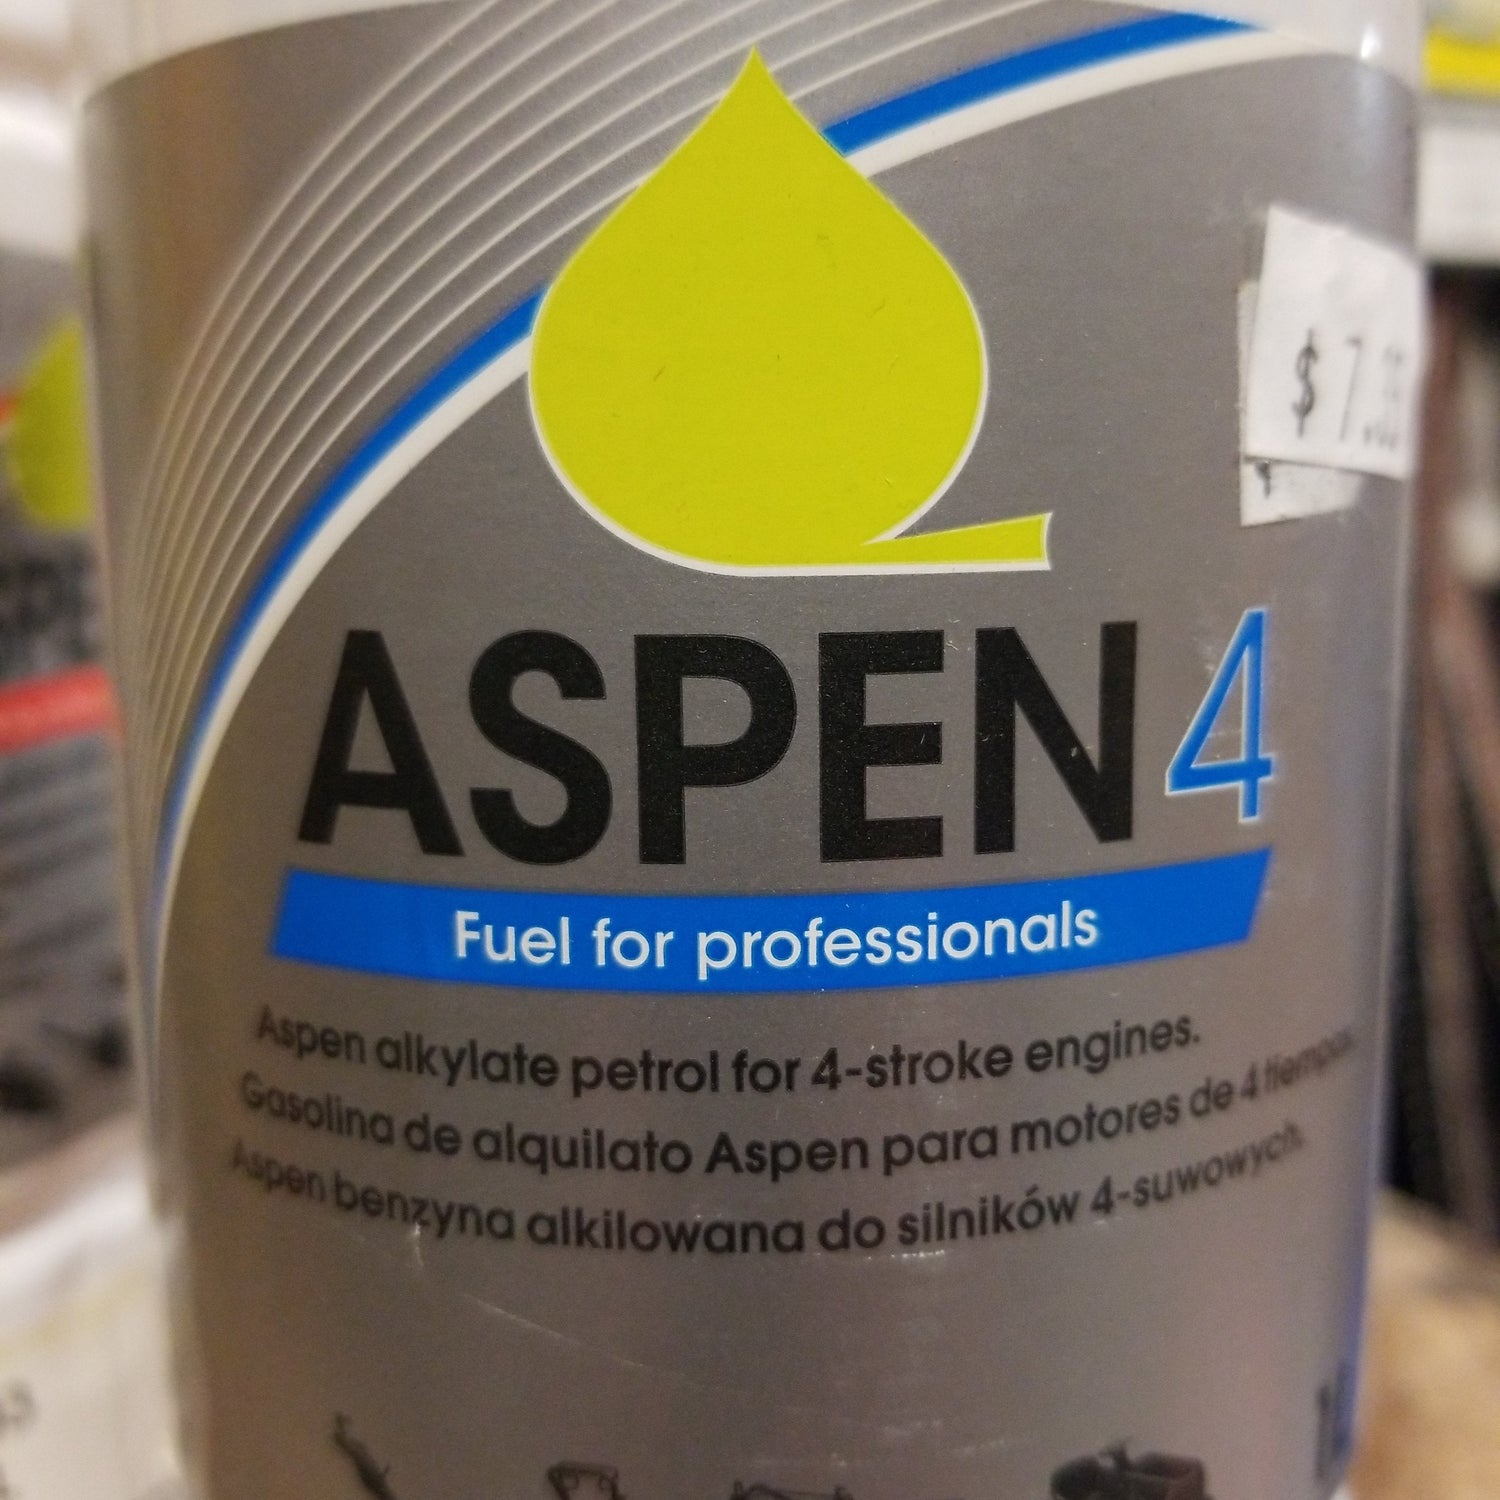 Aspen 4 for Professionals